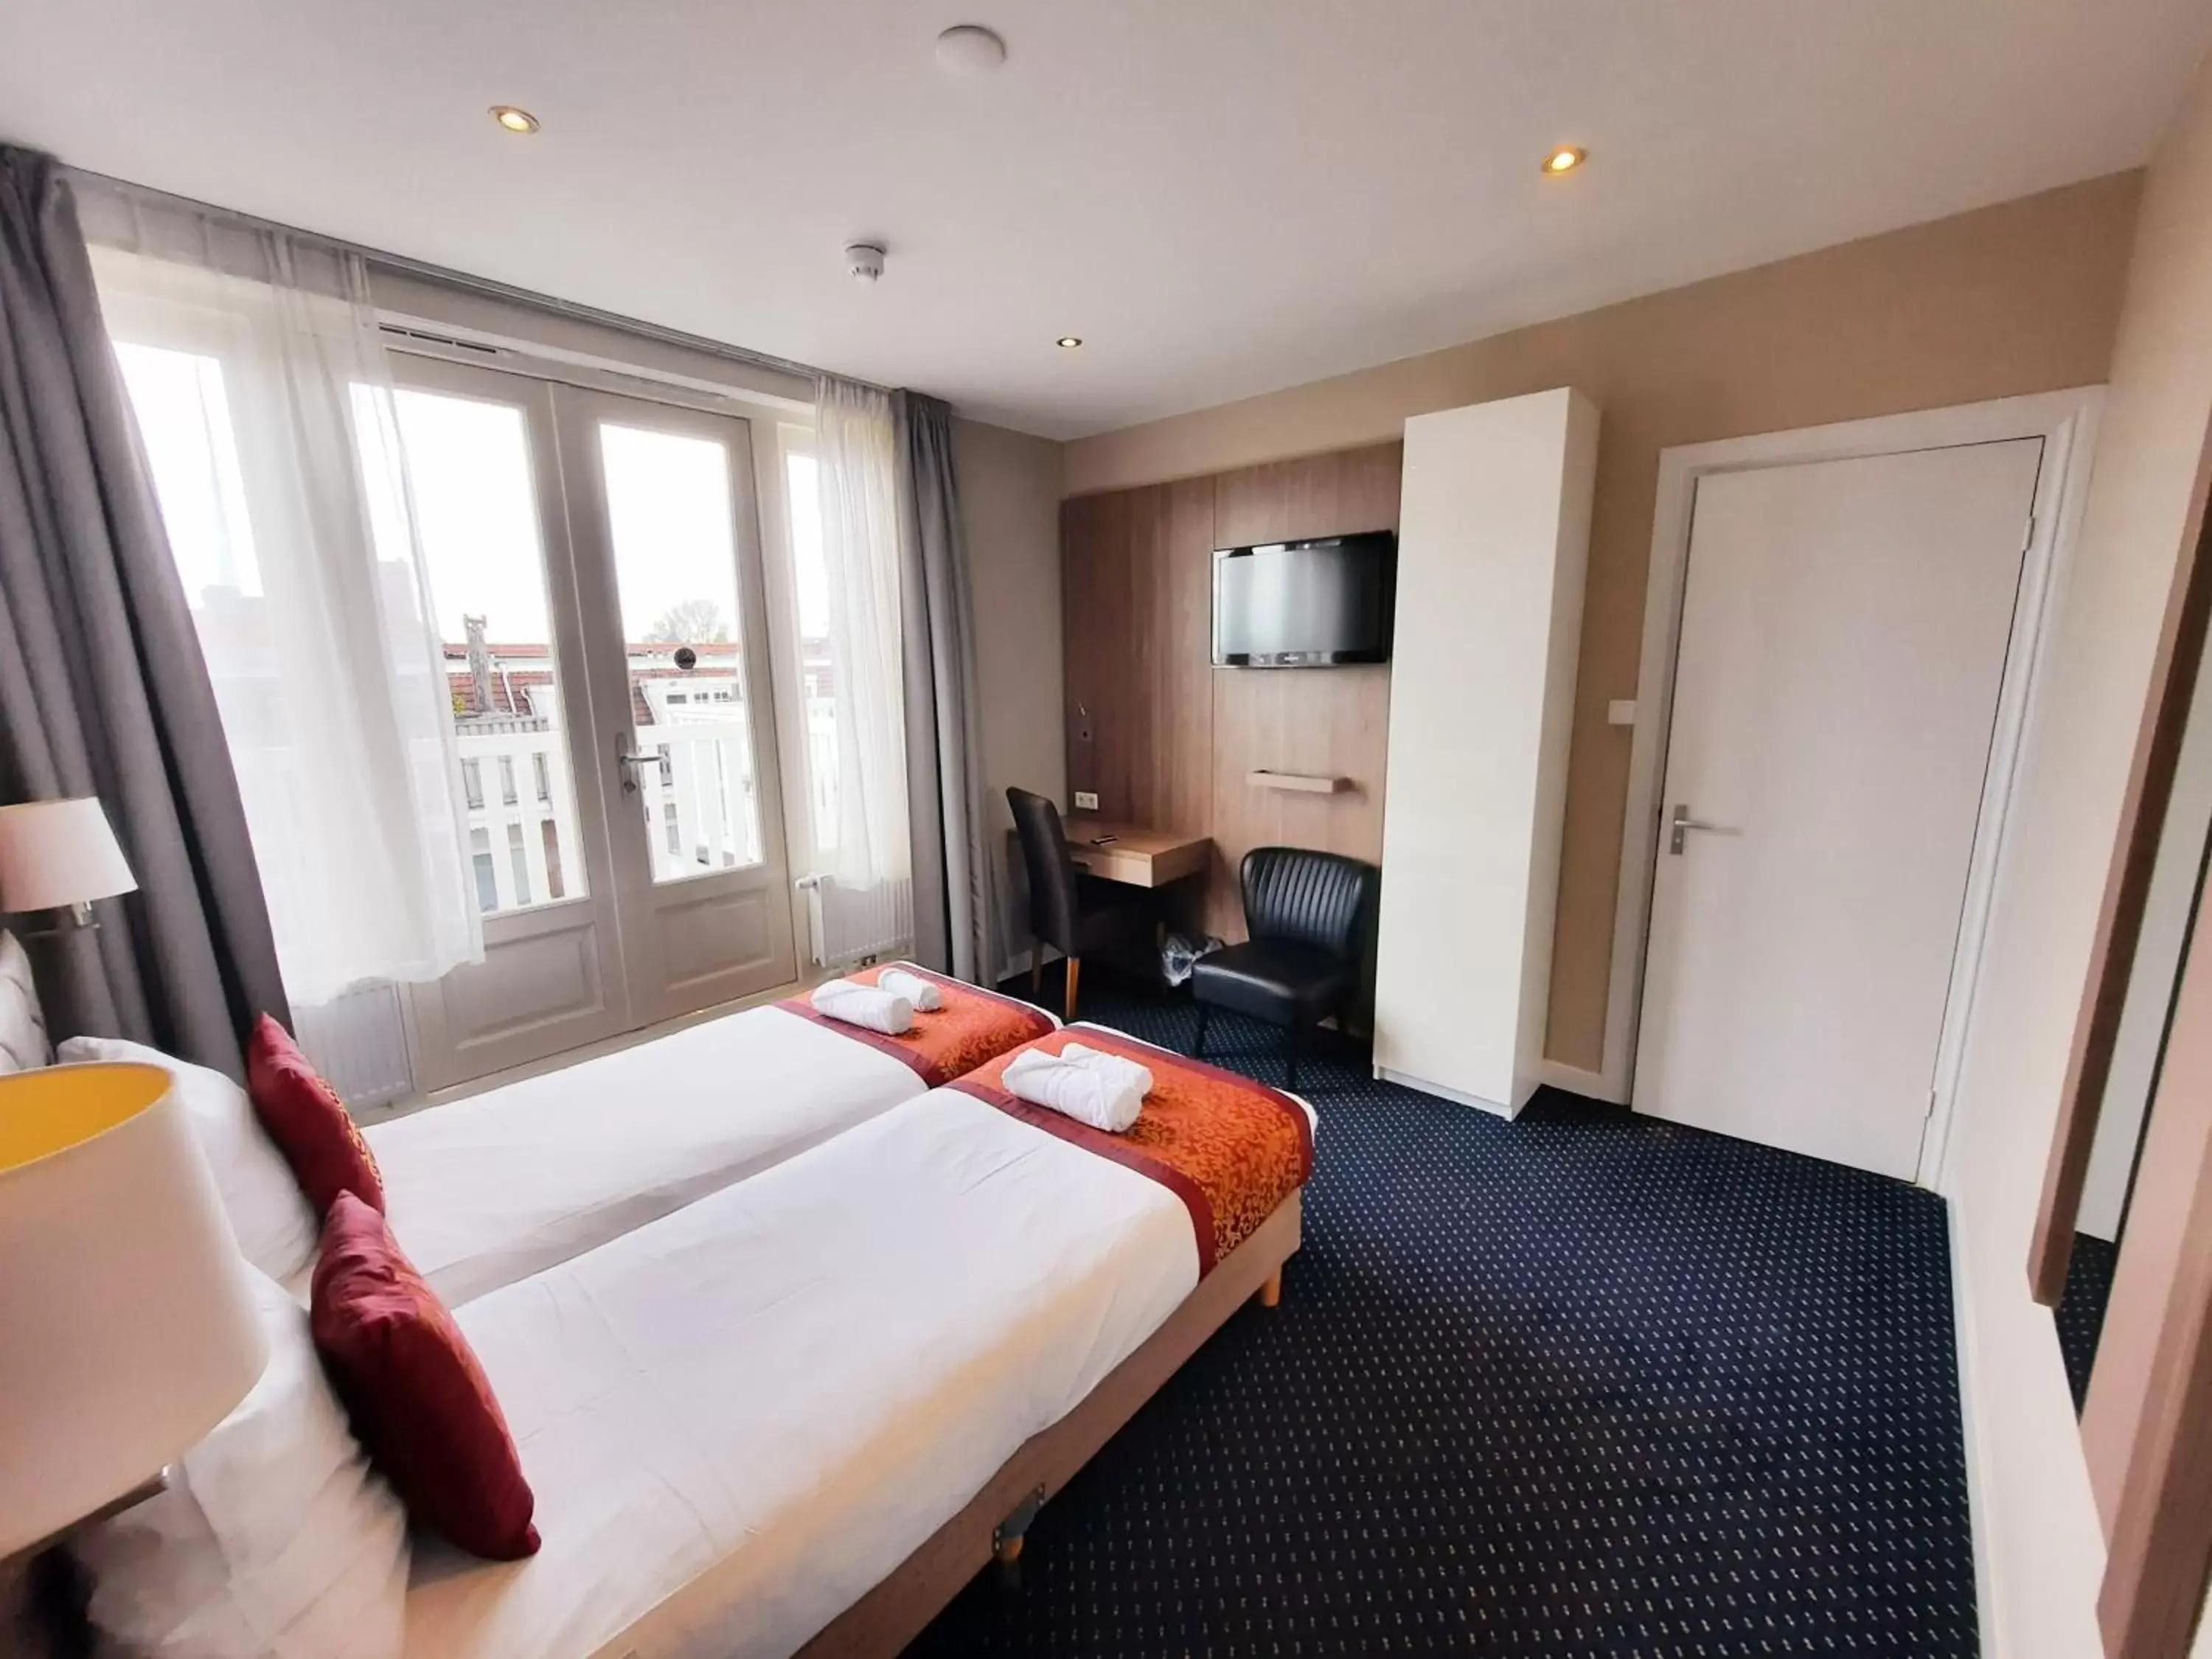 Bedroom in Hotel Washington